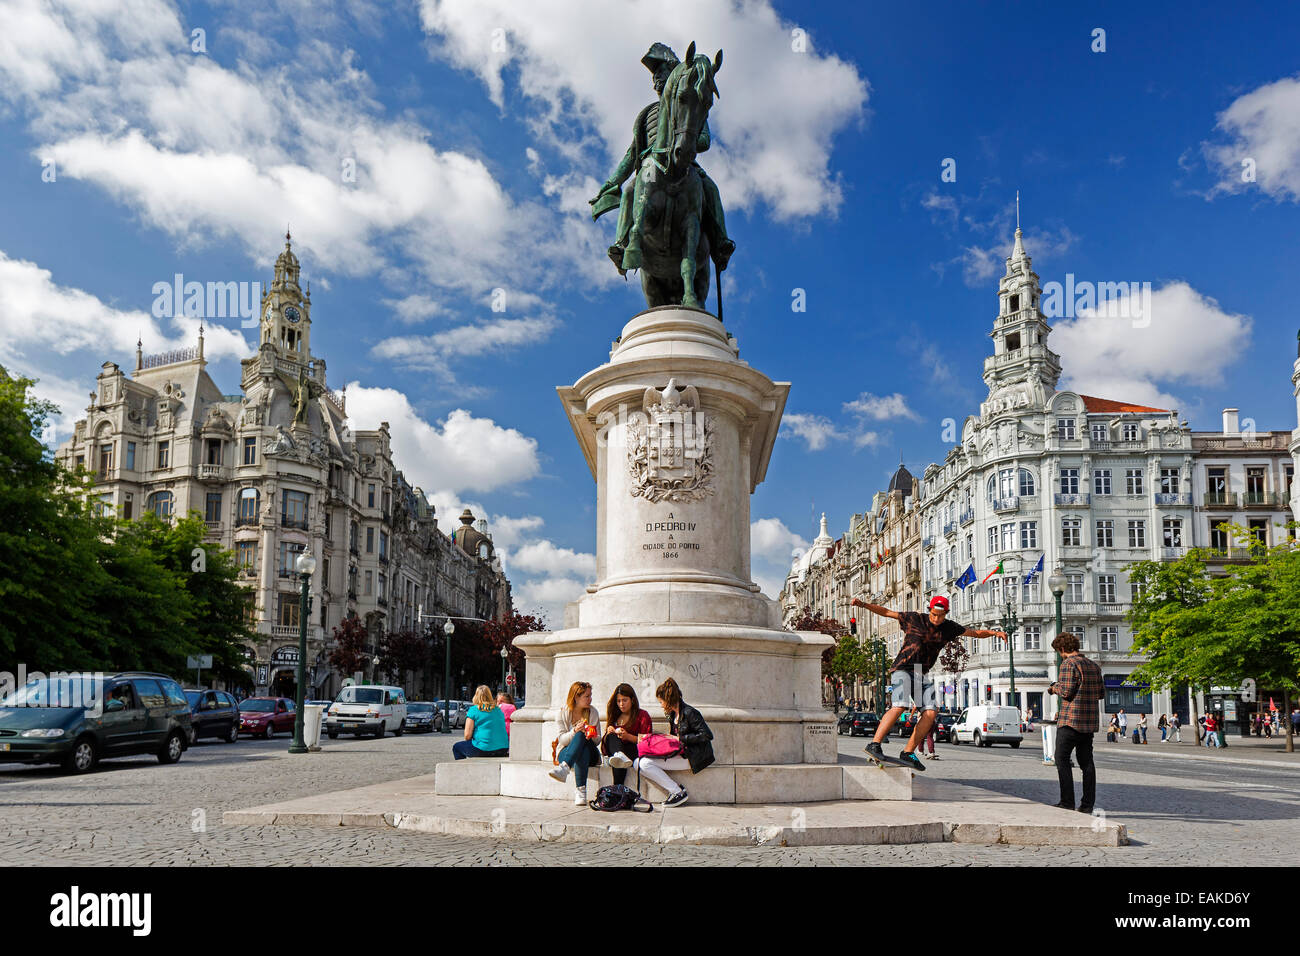 Equestrian statue of Dom Pedro IV, Aliados Avenue with City Hall, Porto, District of Porto, Portugal Stock Photo